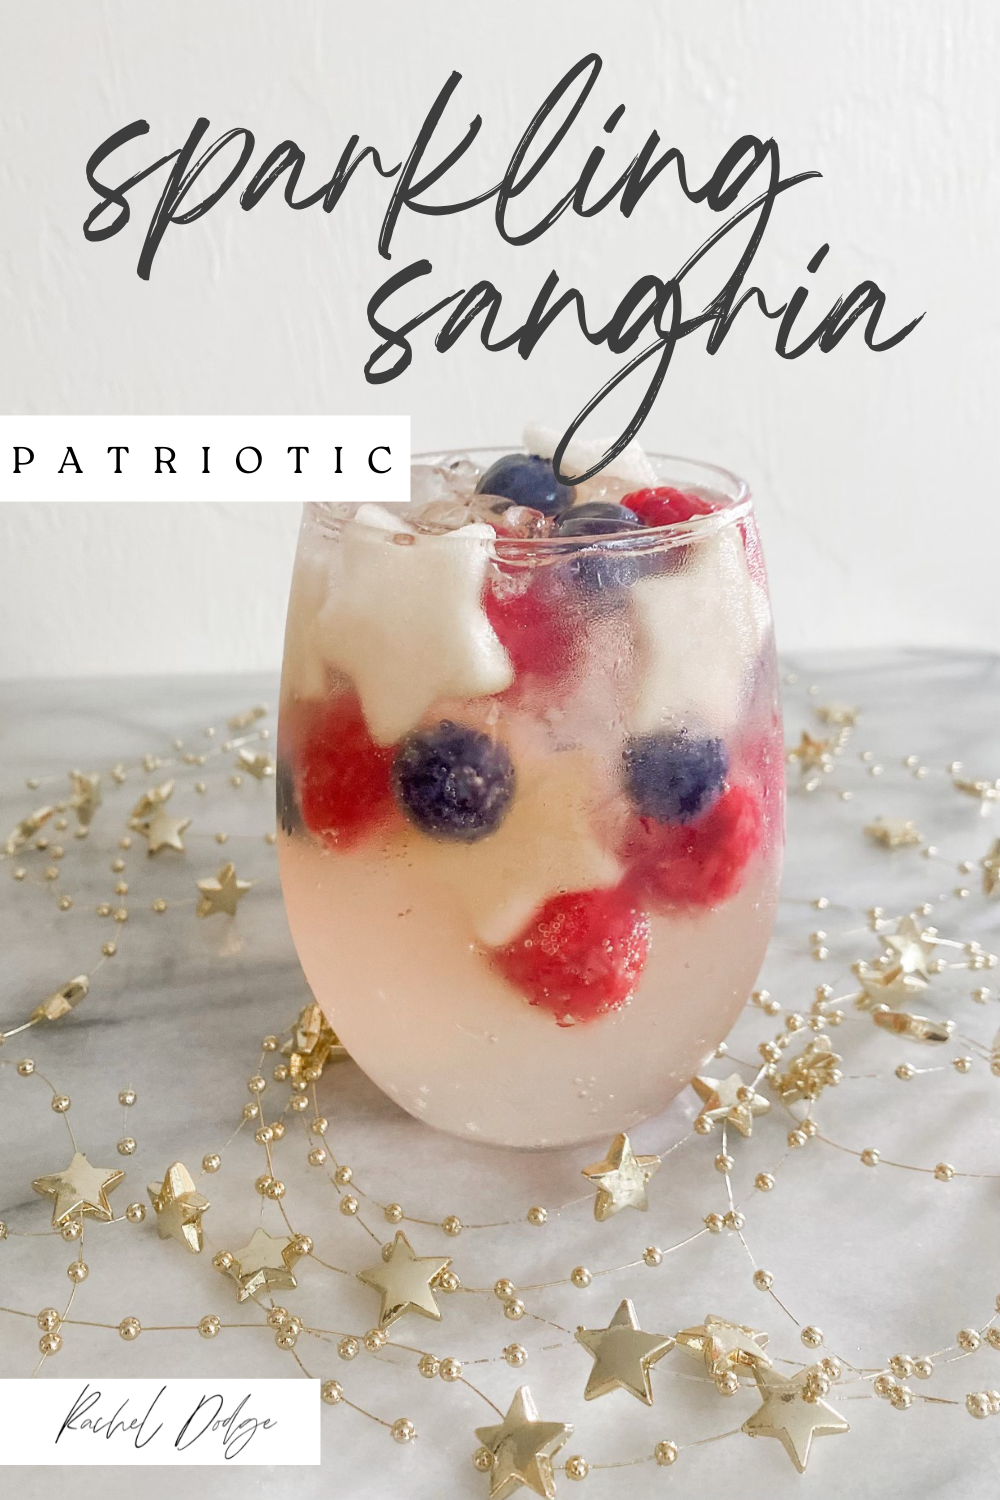 patriotic sparkling sangria recipe pin
